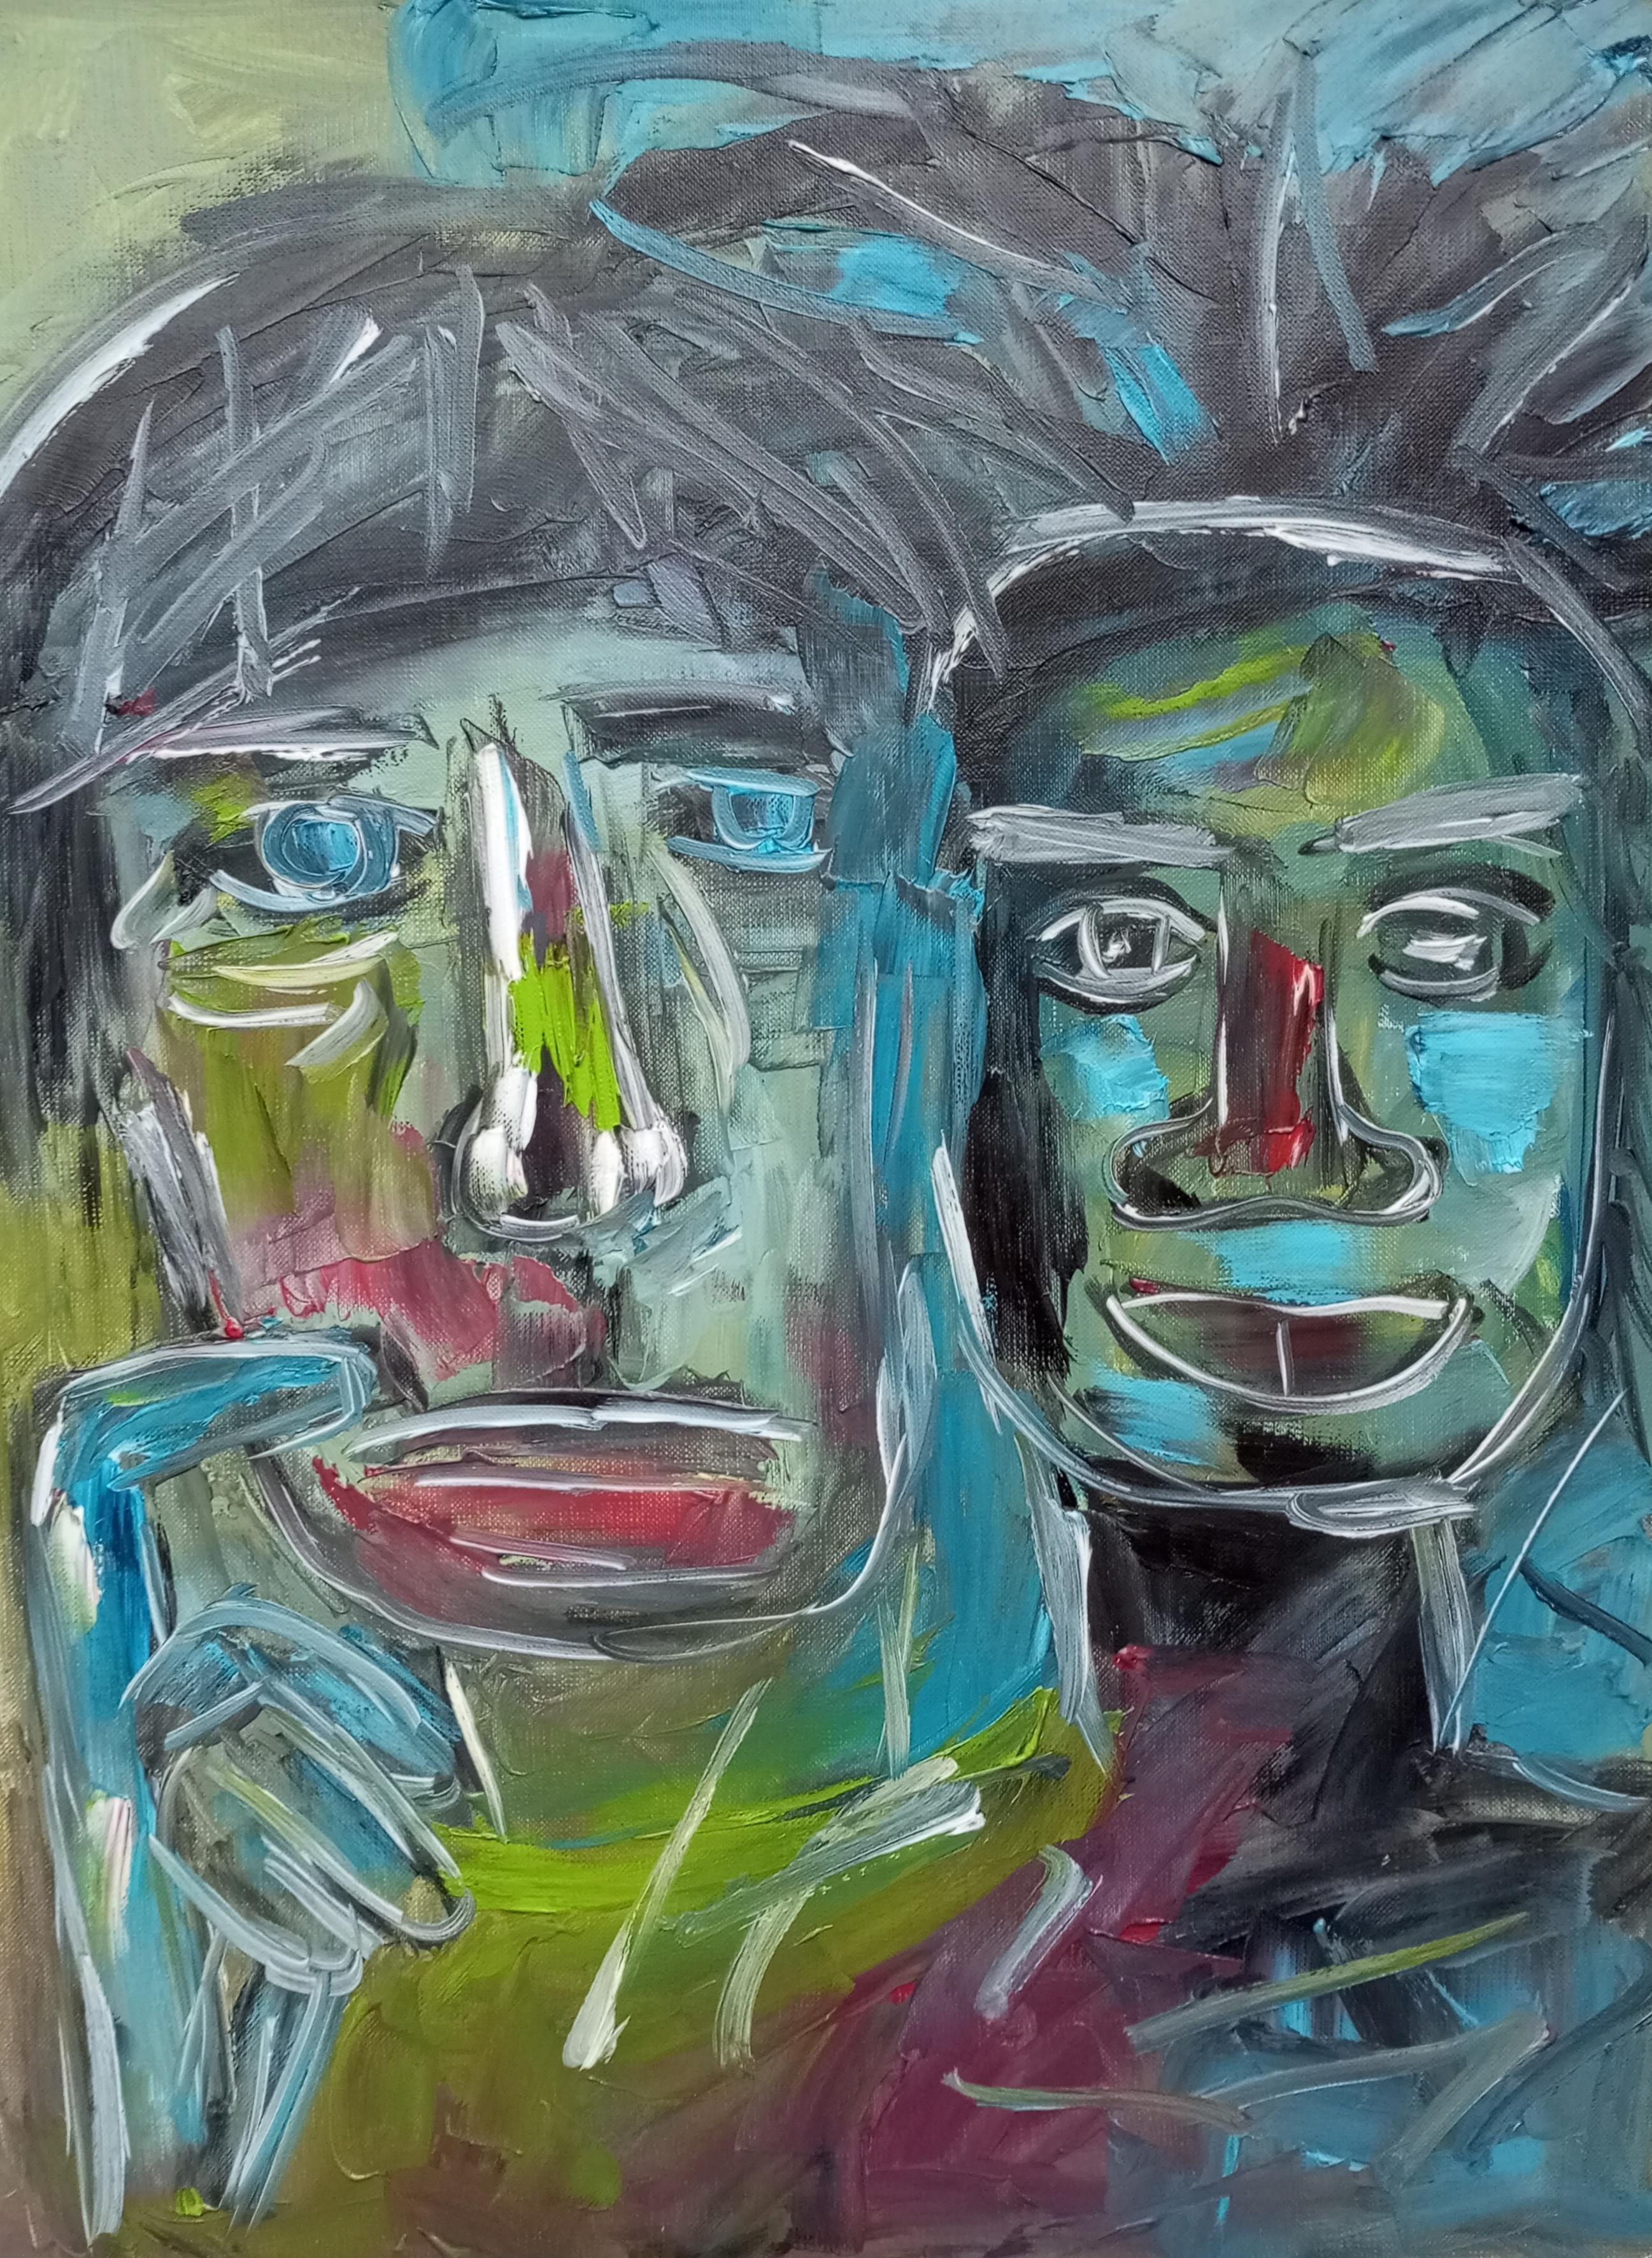  "Amistad Wharol/Basquiat"